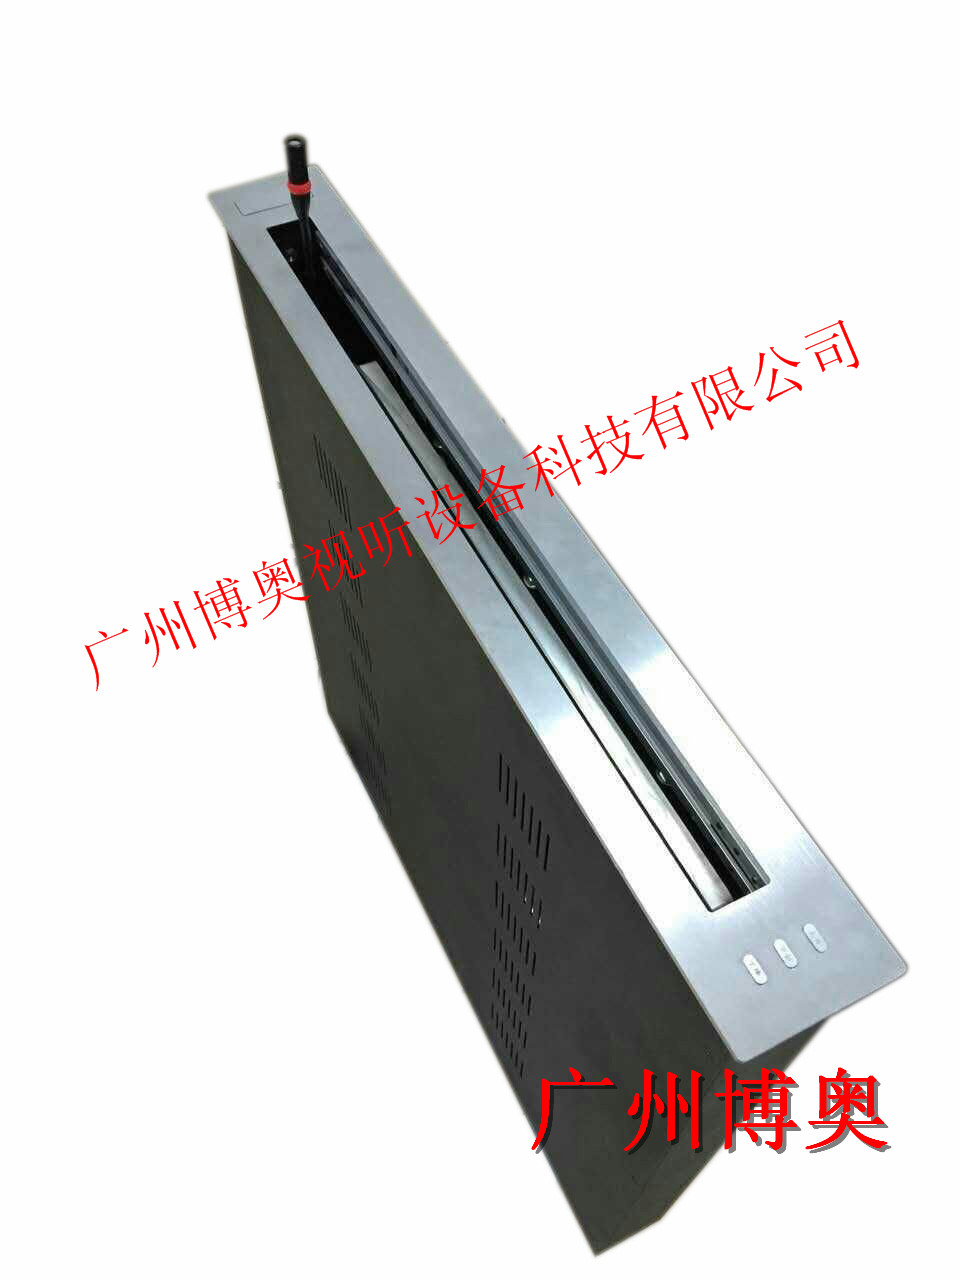 18.4寸超薄液晶屏升降器价格 陕西显示器升降设备生产厂家